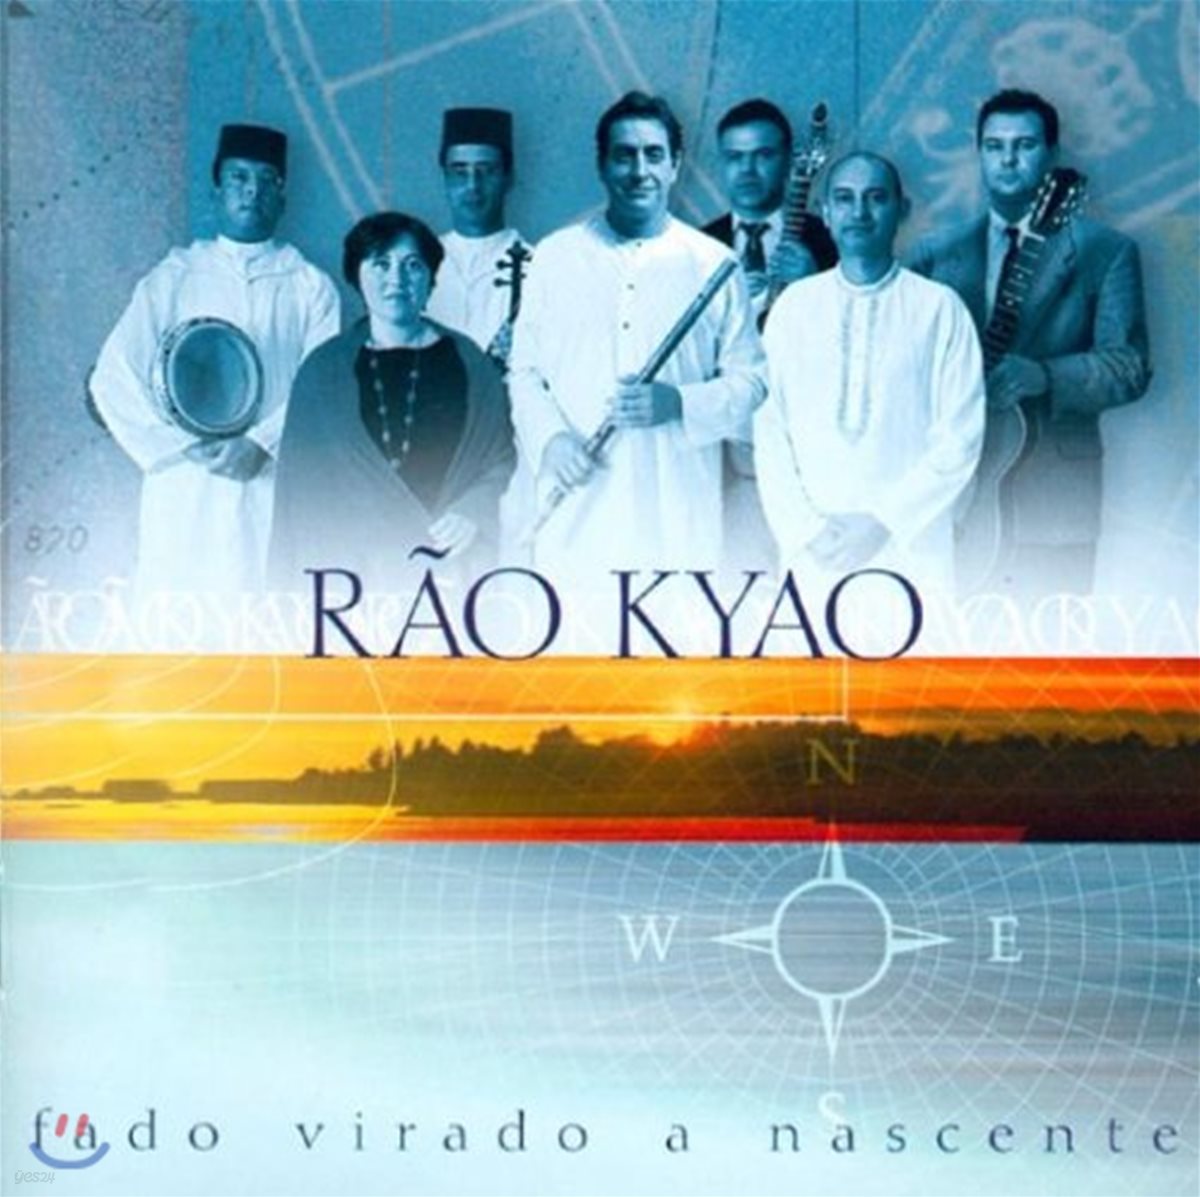 Rao Kyao (라옹 키아오) - Fado Virado A Nascente (일출을 바라보는 파두)